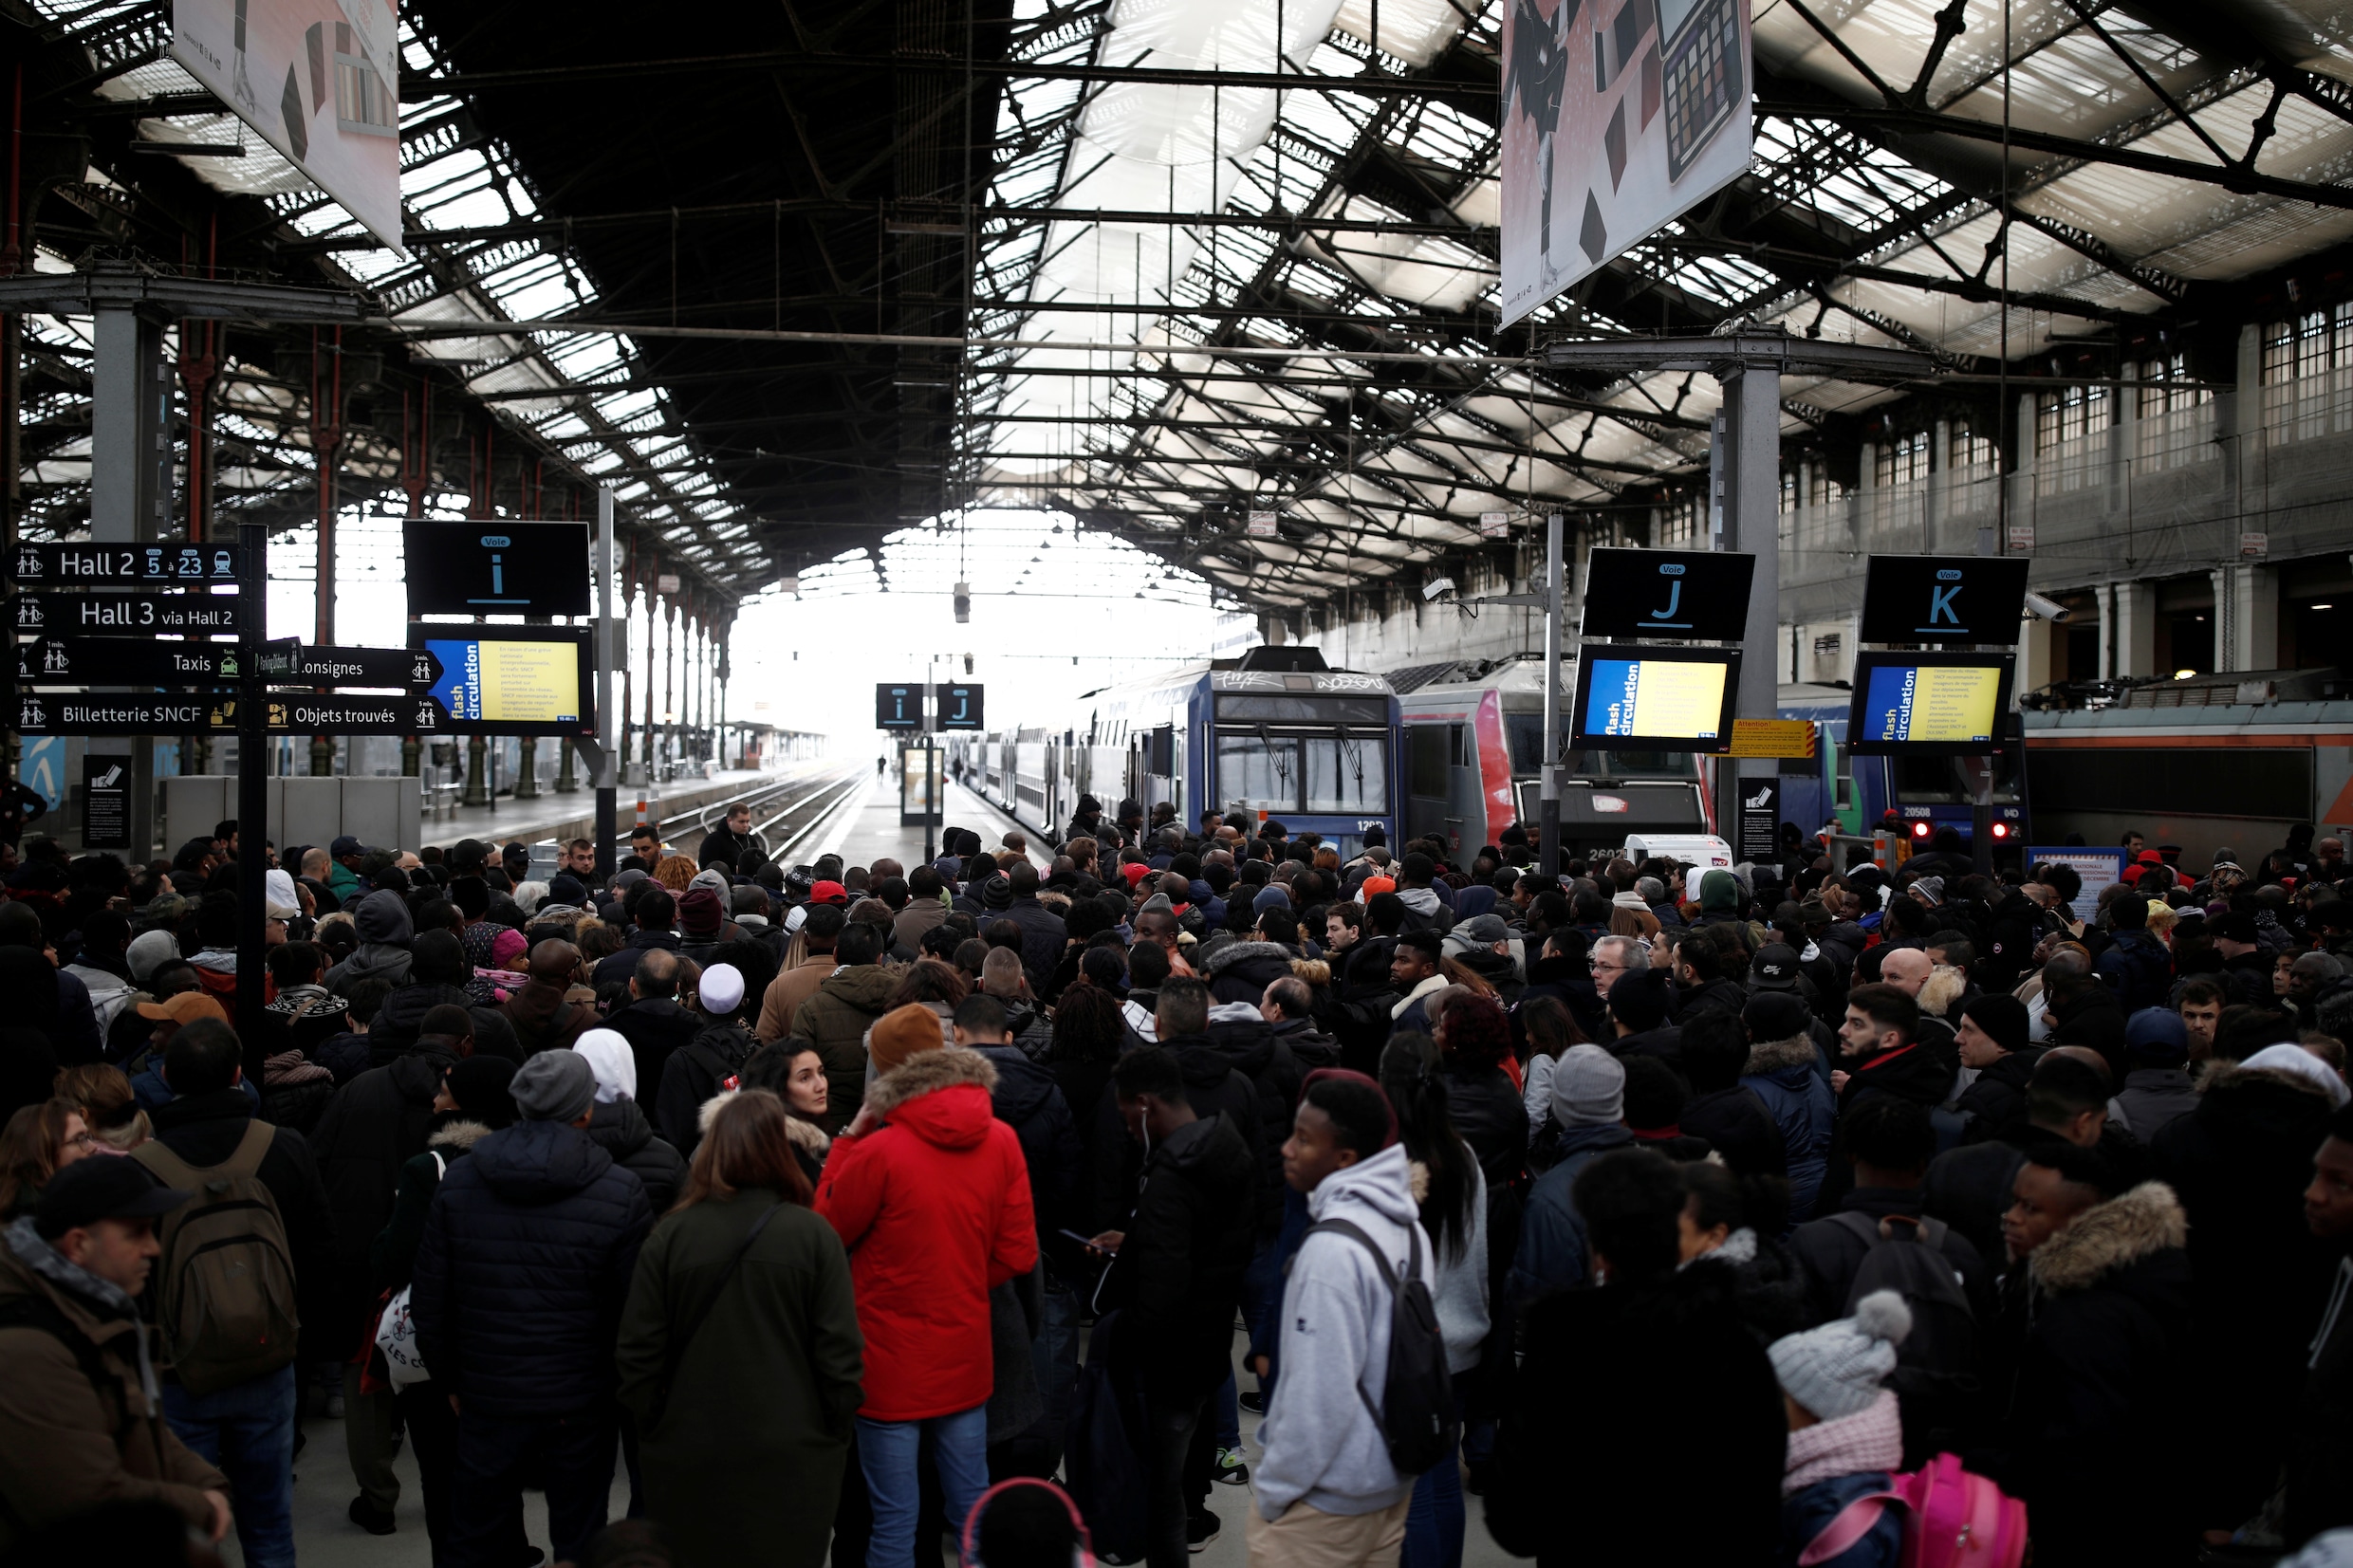 Weinig beterschap in zicht: verkeer Frankrijk blijft ‘sterk verstoord’, monsterfiles rond Parijs